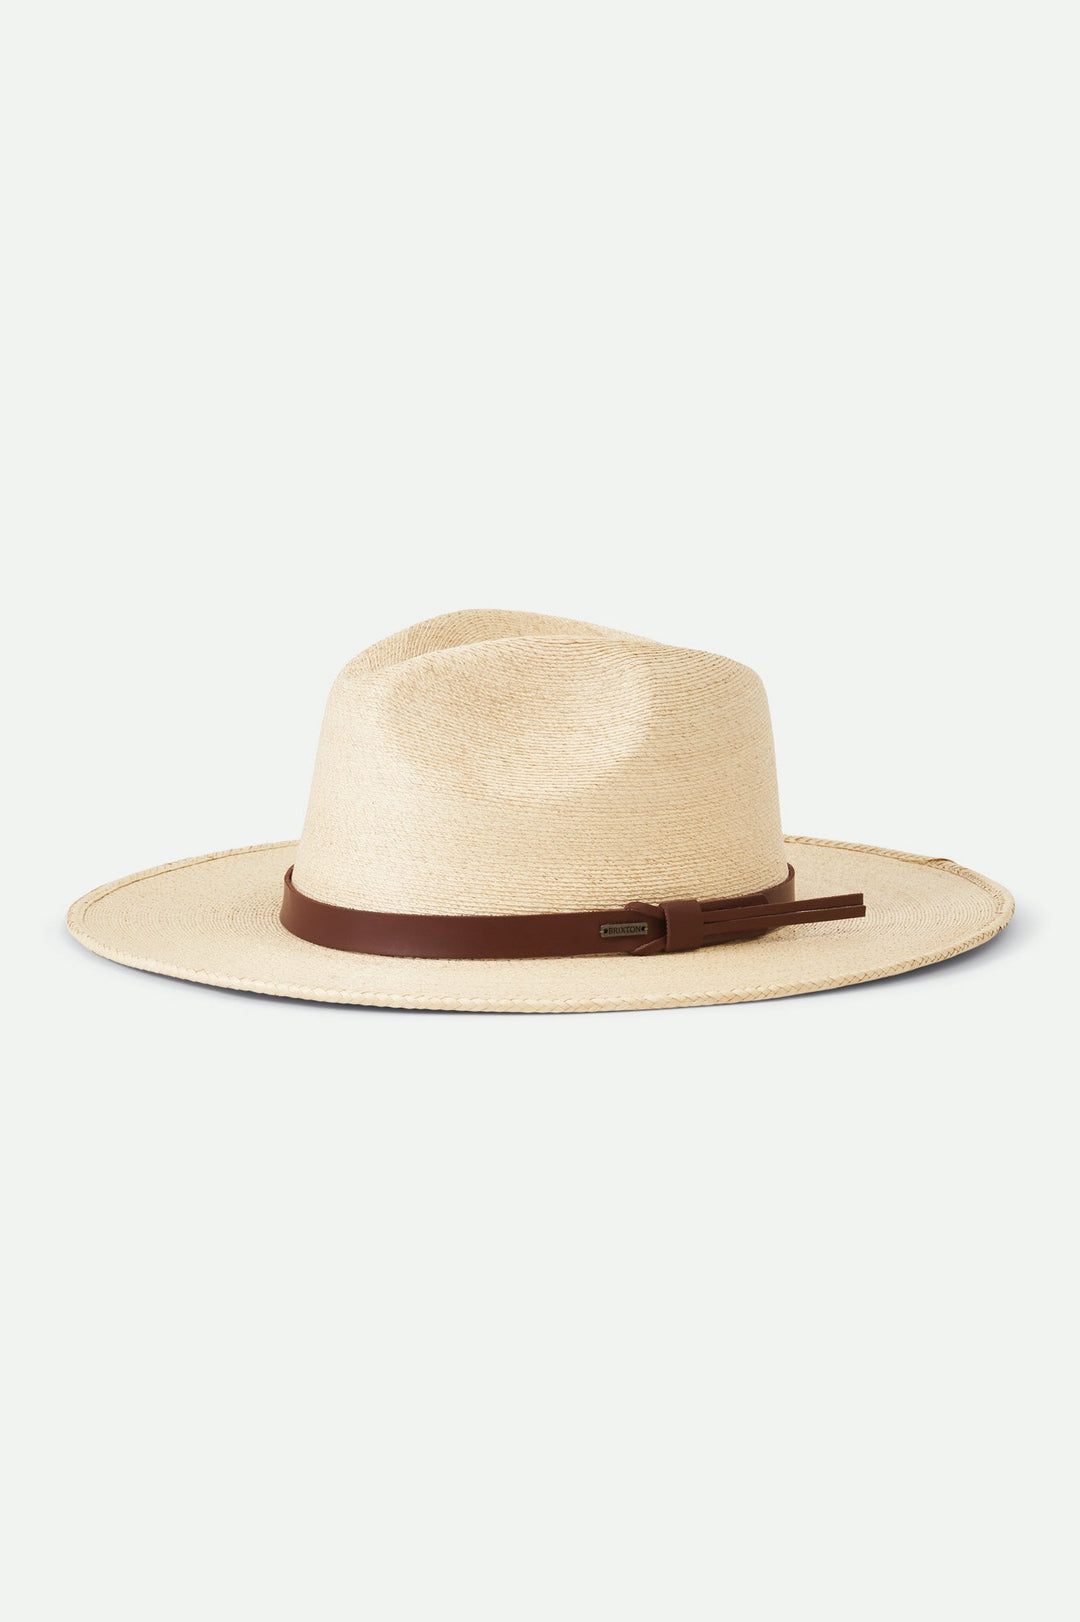 Field Proper Straw Hat - Sun Diego Boardshop